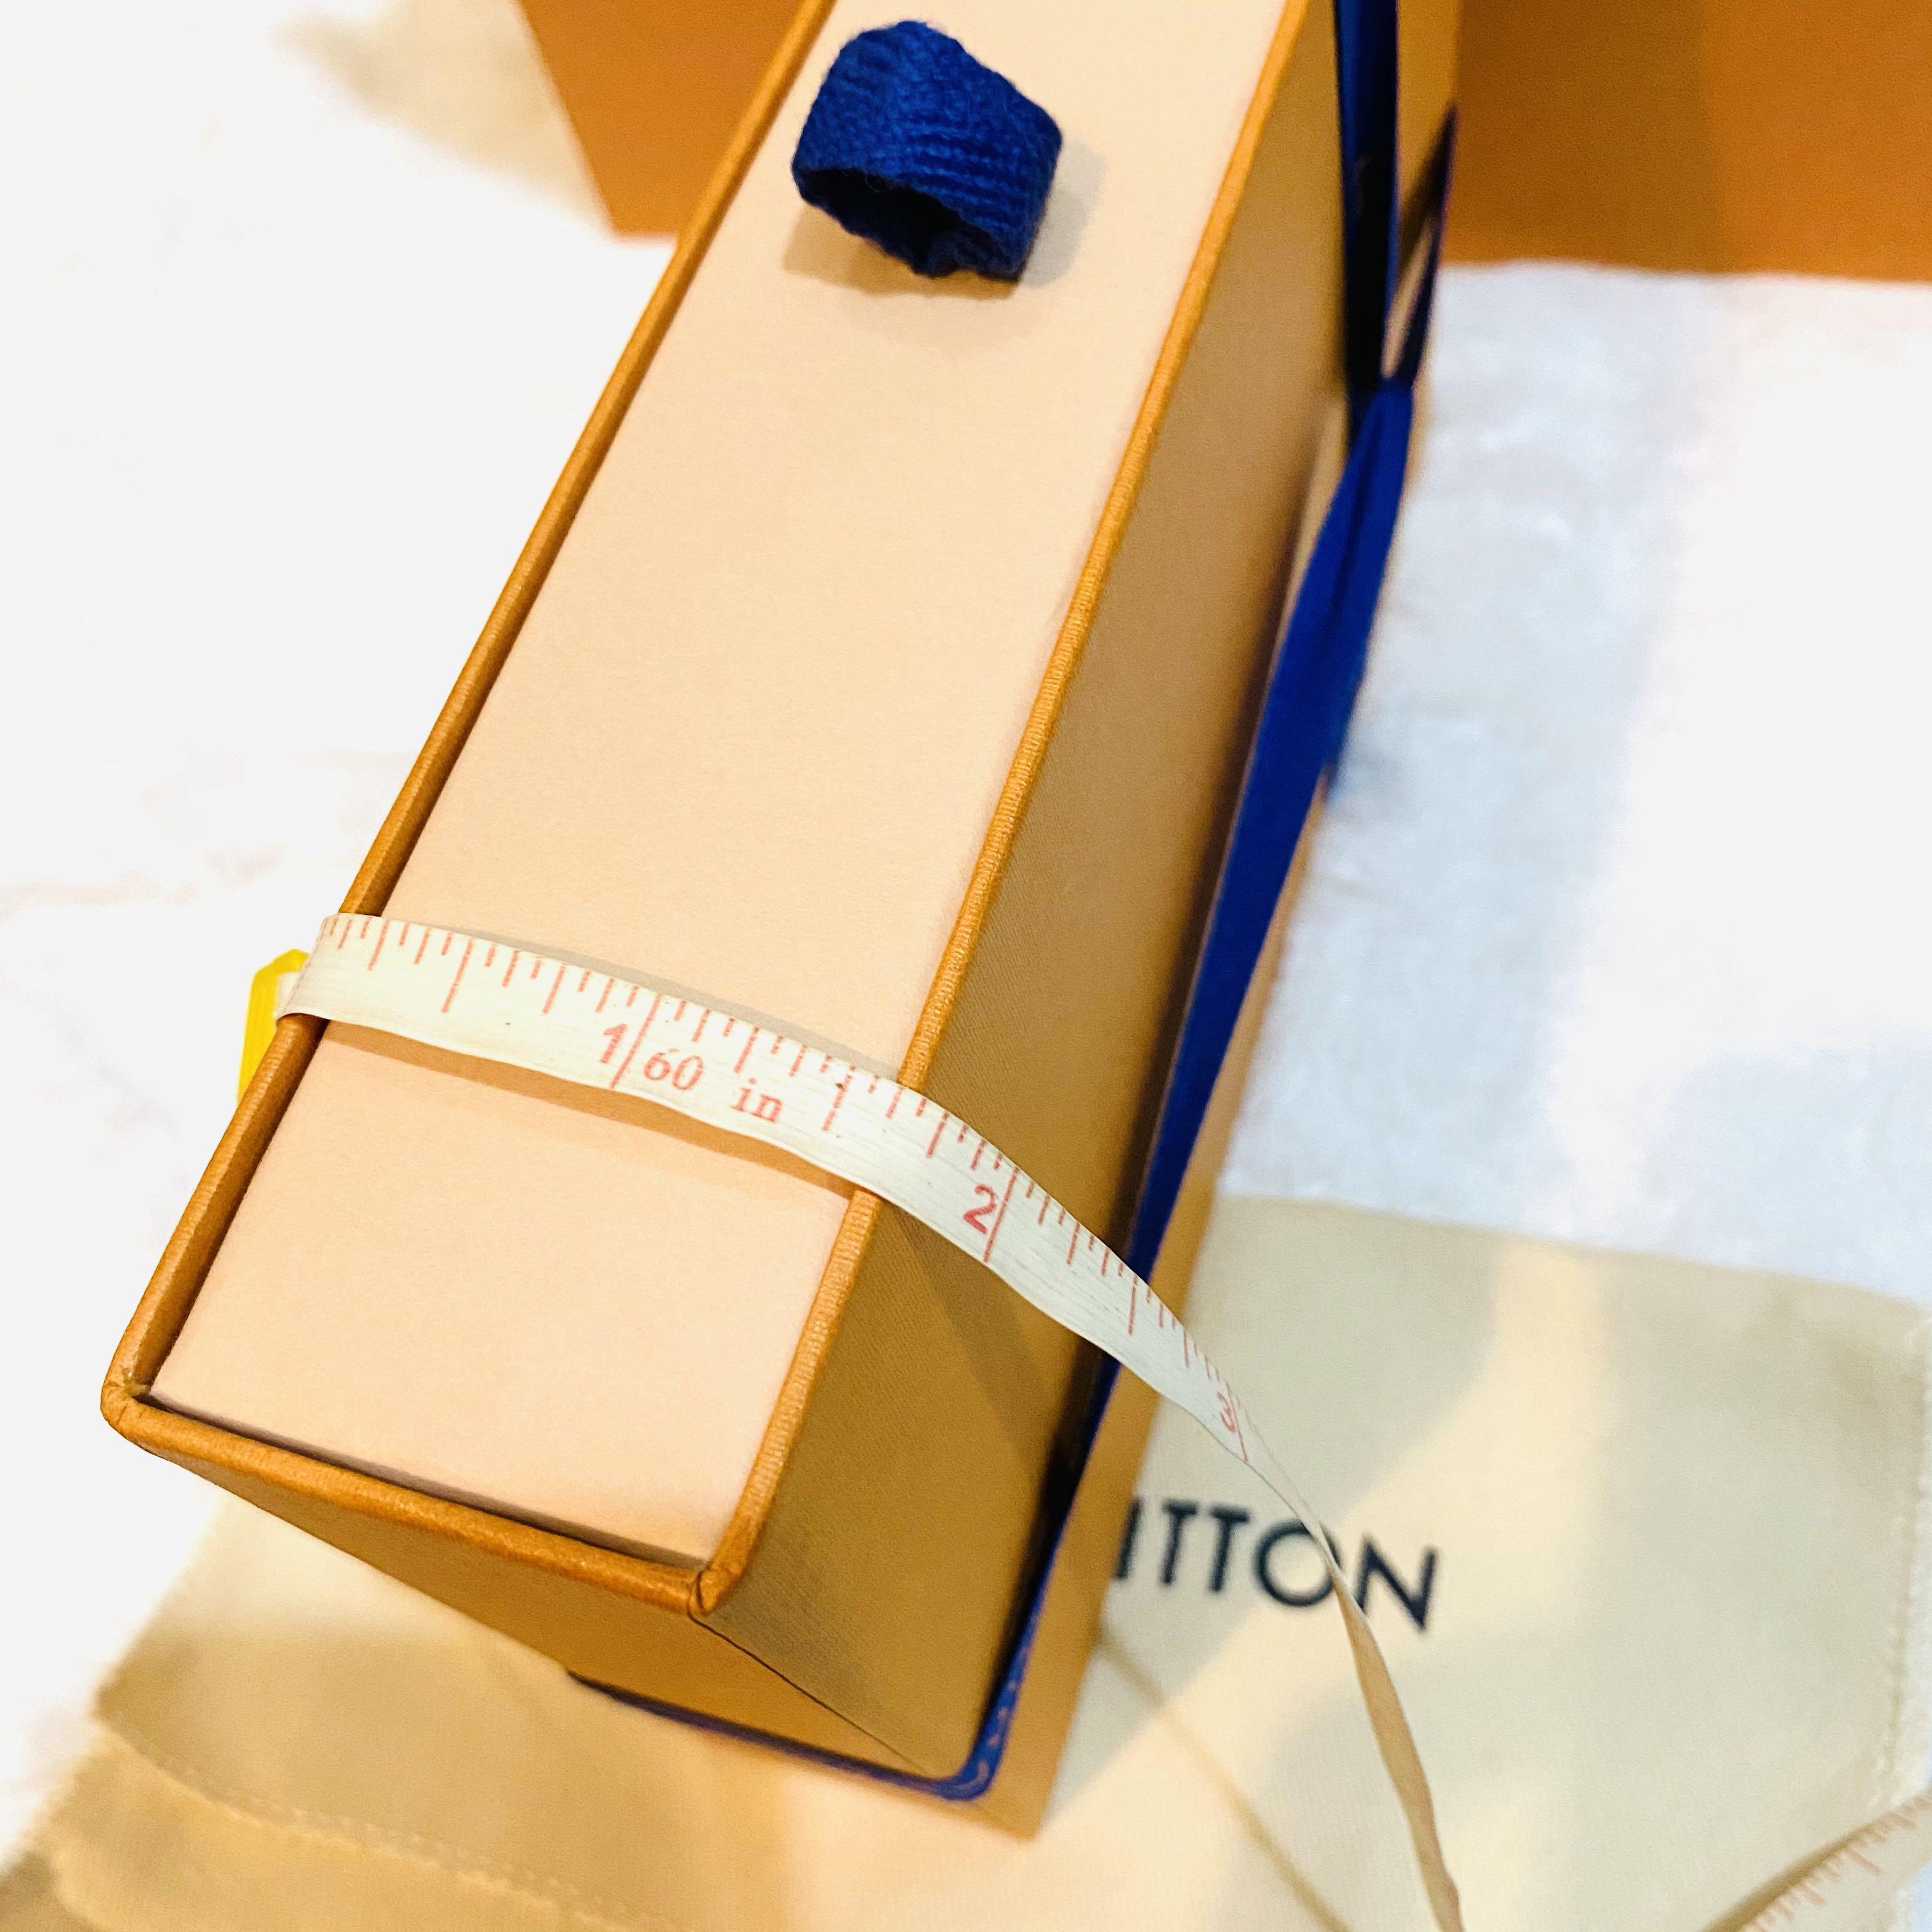 Authe Louis Vuitton empty Box 5.4”x 3.5”x 1”W/Dust Bag ,Paper Bag,Ribbon &  Card.